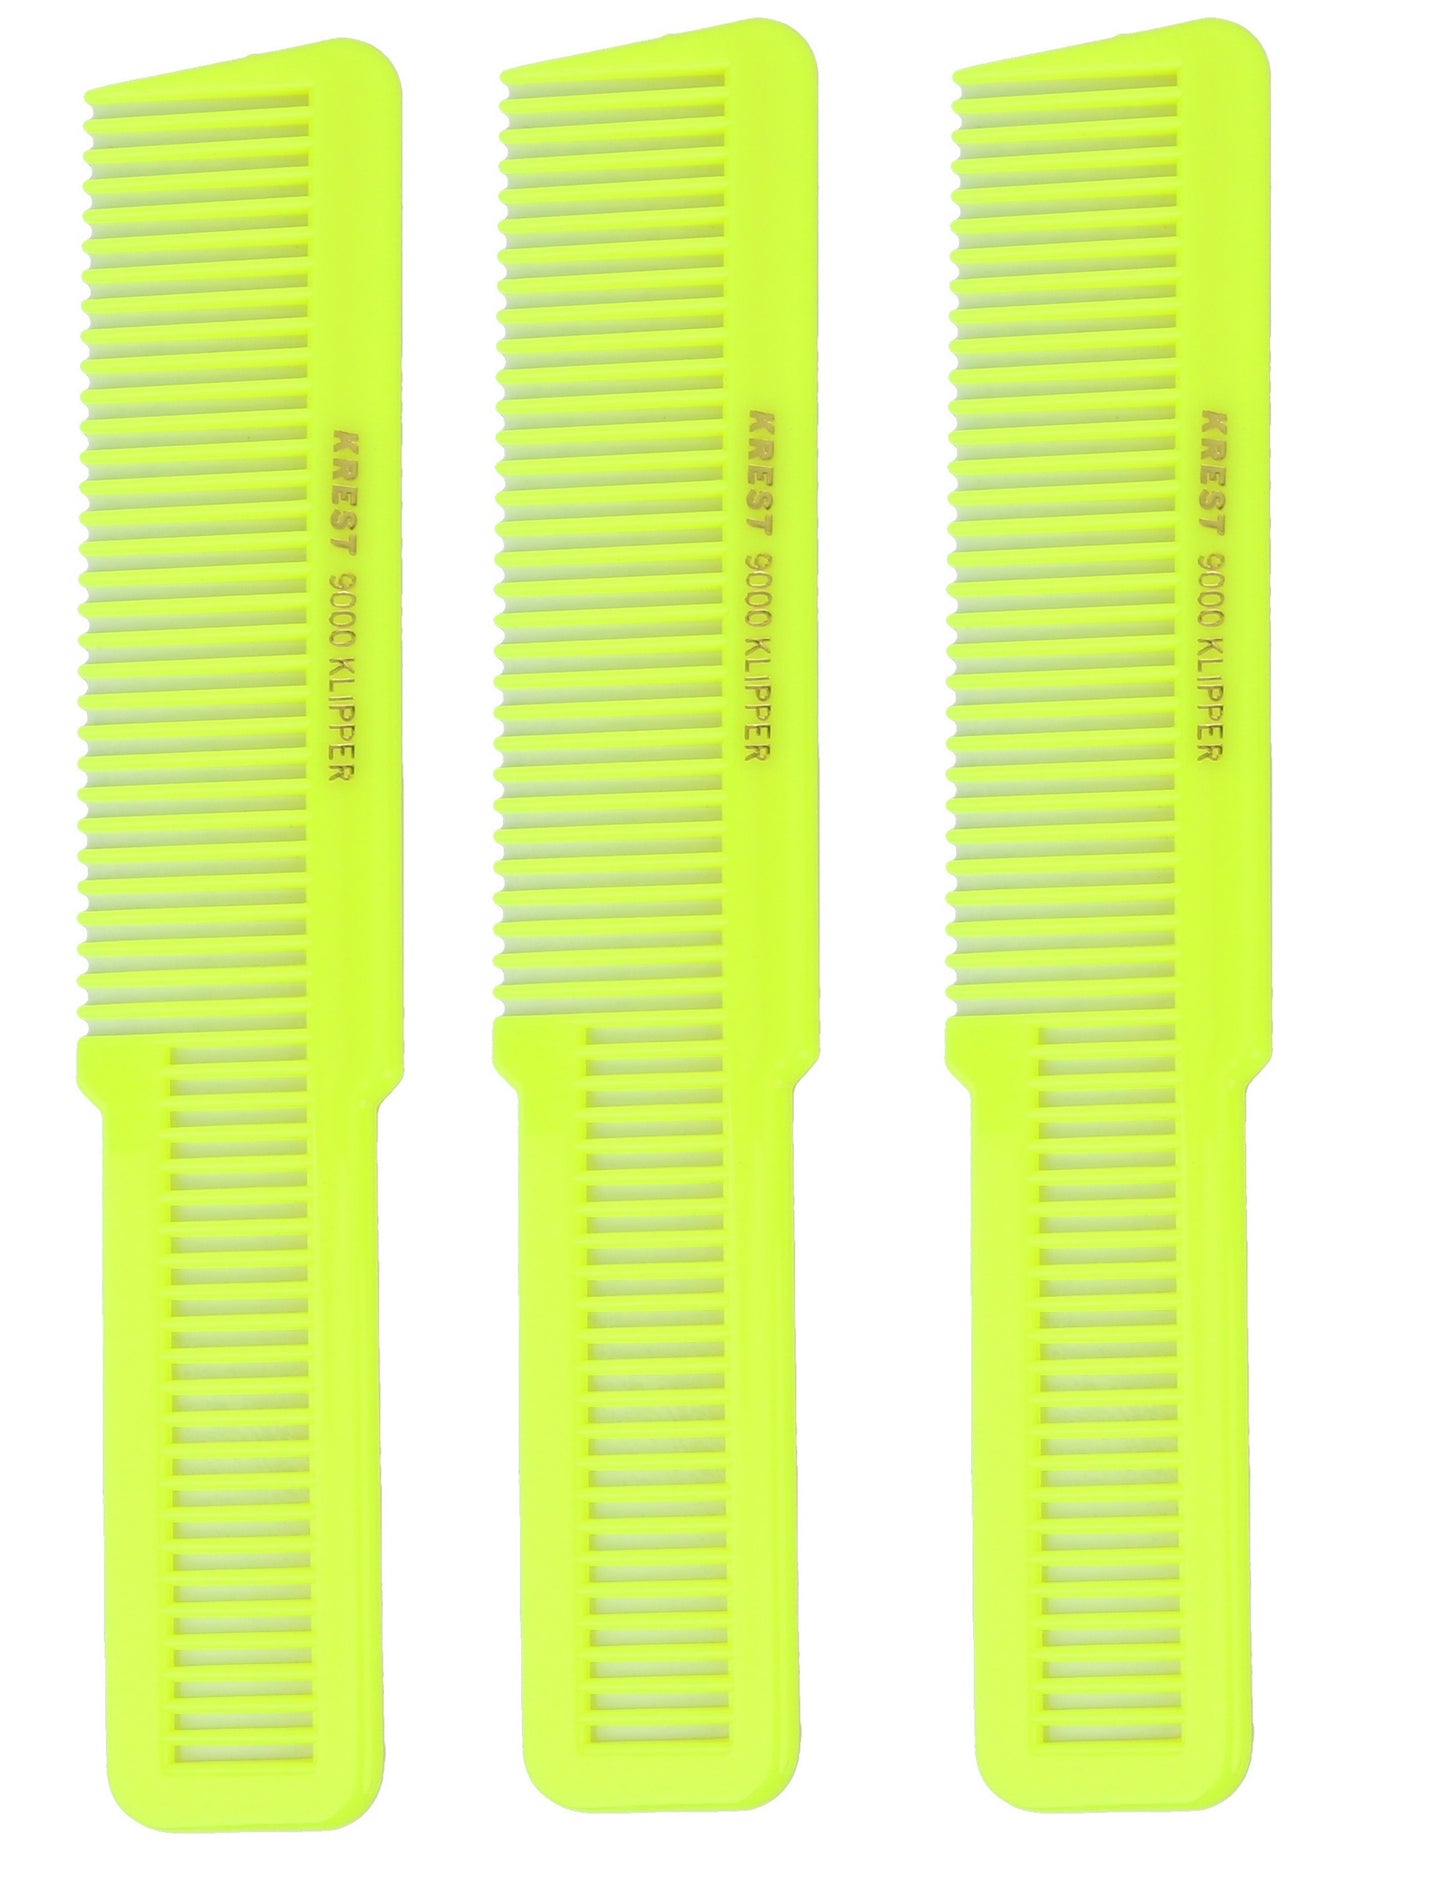 8 In. Krest Combs 9000 Clipper Cutting Comb Flattop Combs Klipper Comb. 3 pcs.